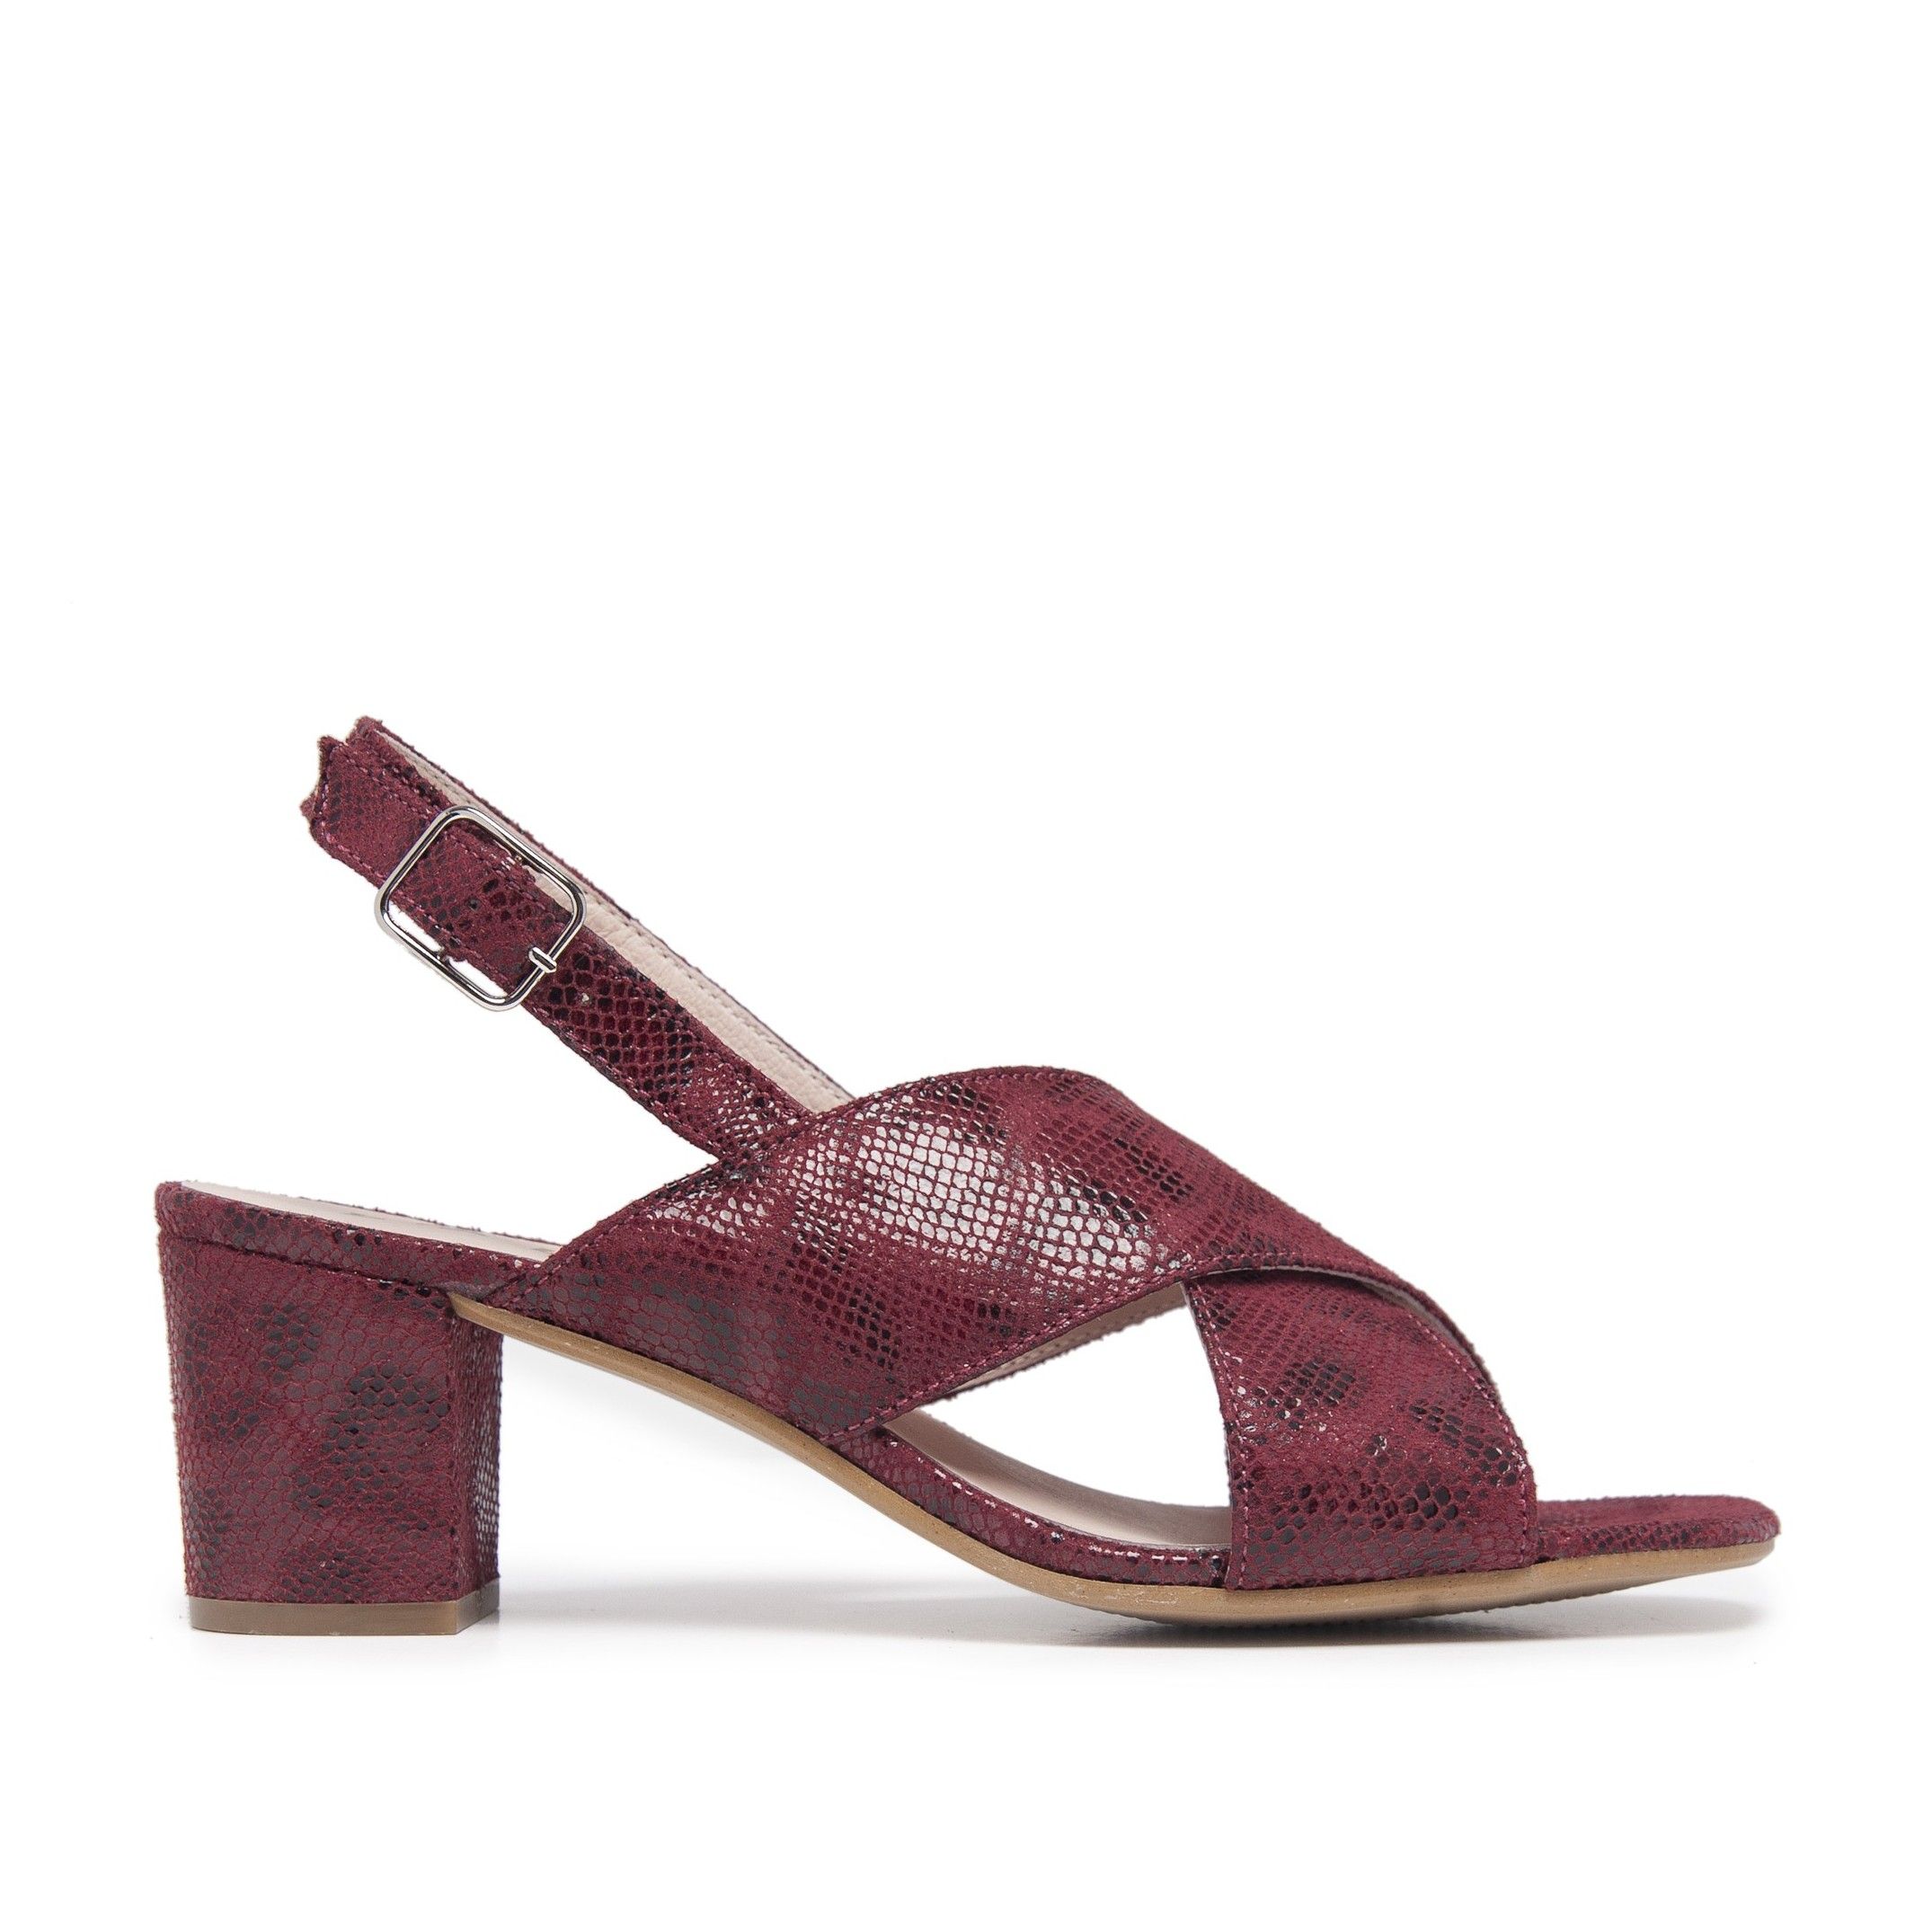 Leather Sandals Heel for Women Heeled Bordeaux Shoes Eva Lopez